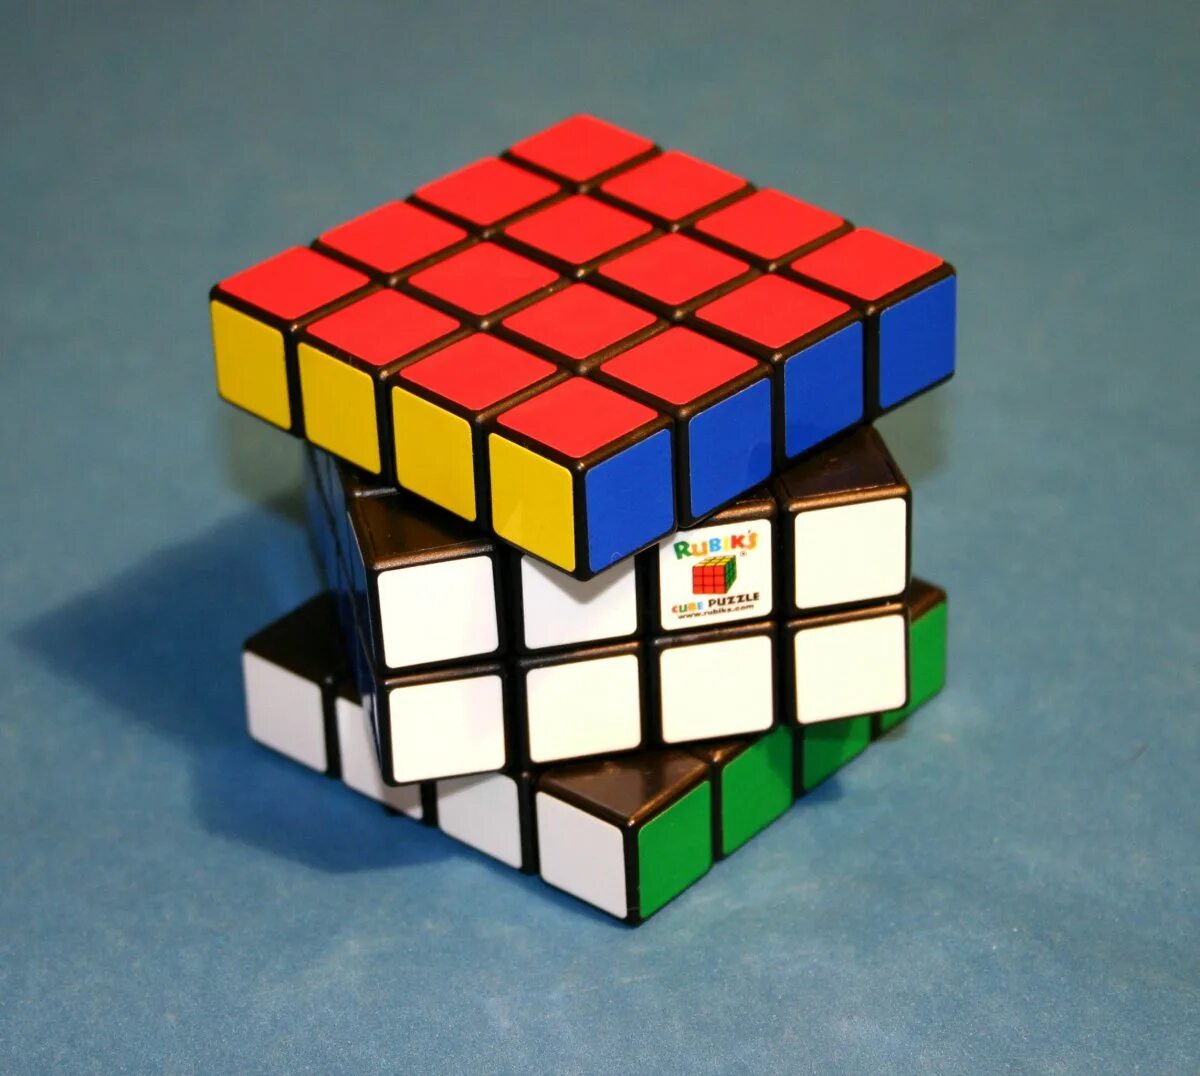 Кубик Рубика 4*4. Флип кубик Рубика 4на4. Кубик-Рубика 3х3 стандарт. Rubiks кубик Рубика 4х4. Кубик рубика собрать за 10